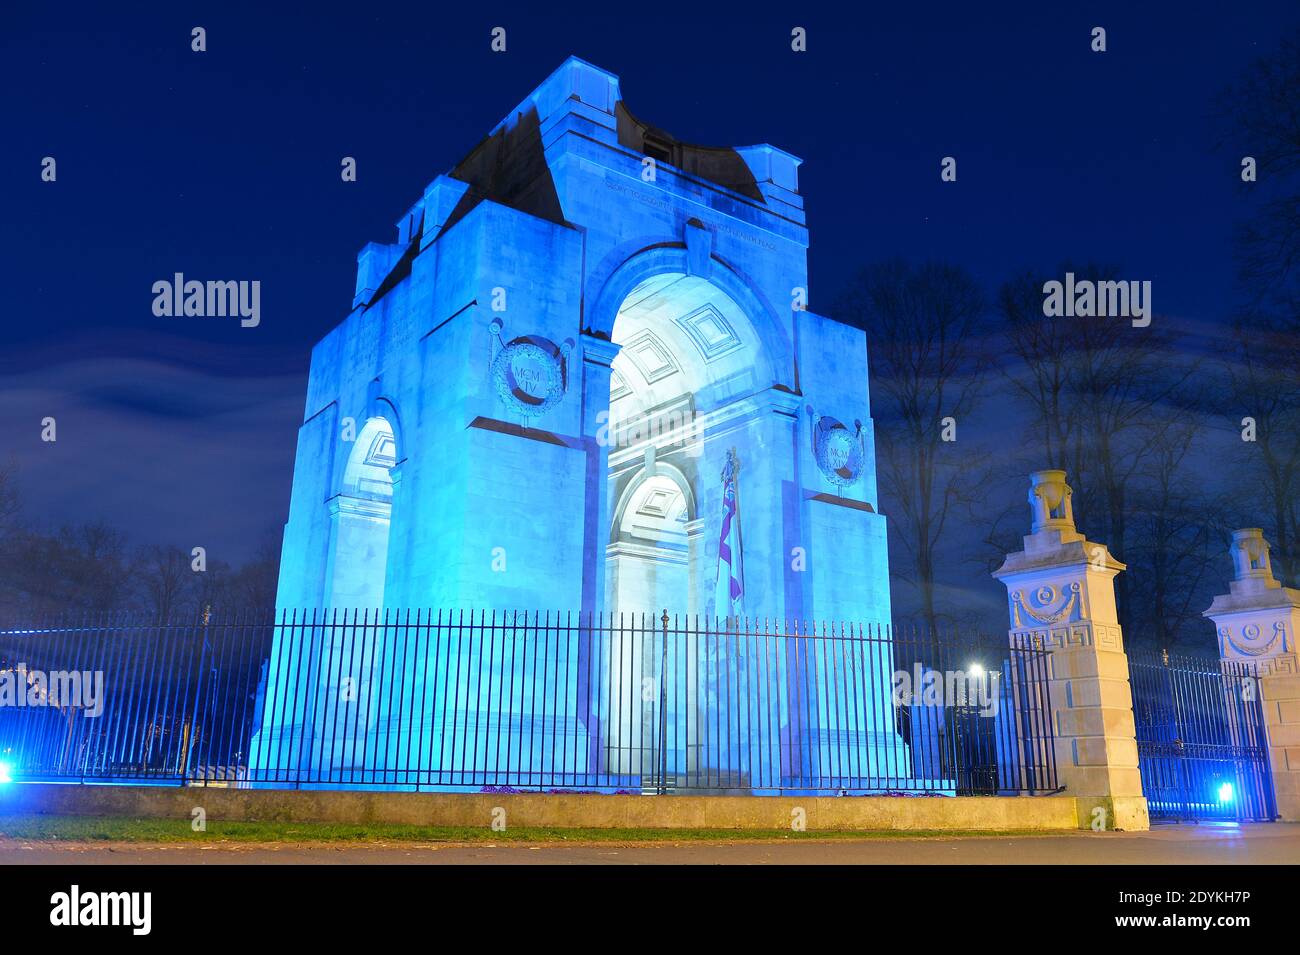 Le War Memorial de Victoria Park à Leicester est illuminé Avec une lumière bleue pour rendre hommage aux travailleurs du NHS Pendant la pandémie du coronavirus Banque D'Images